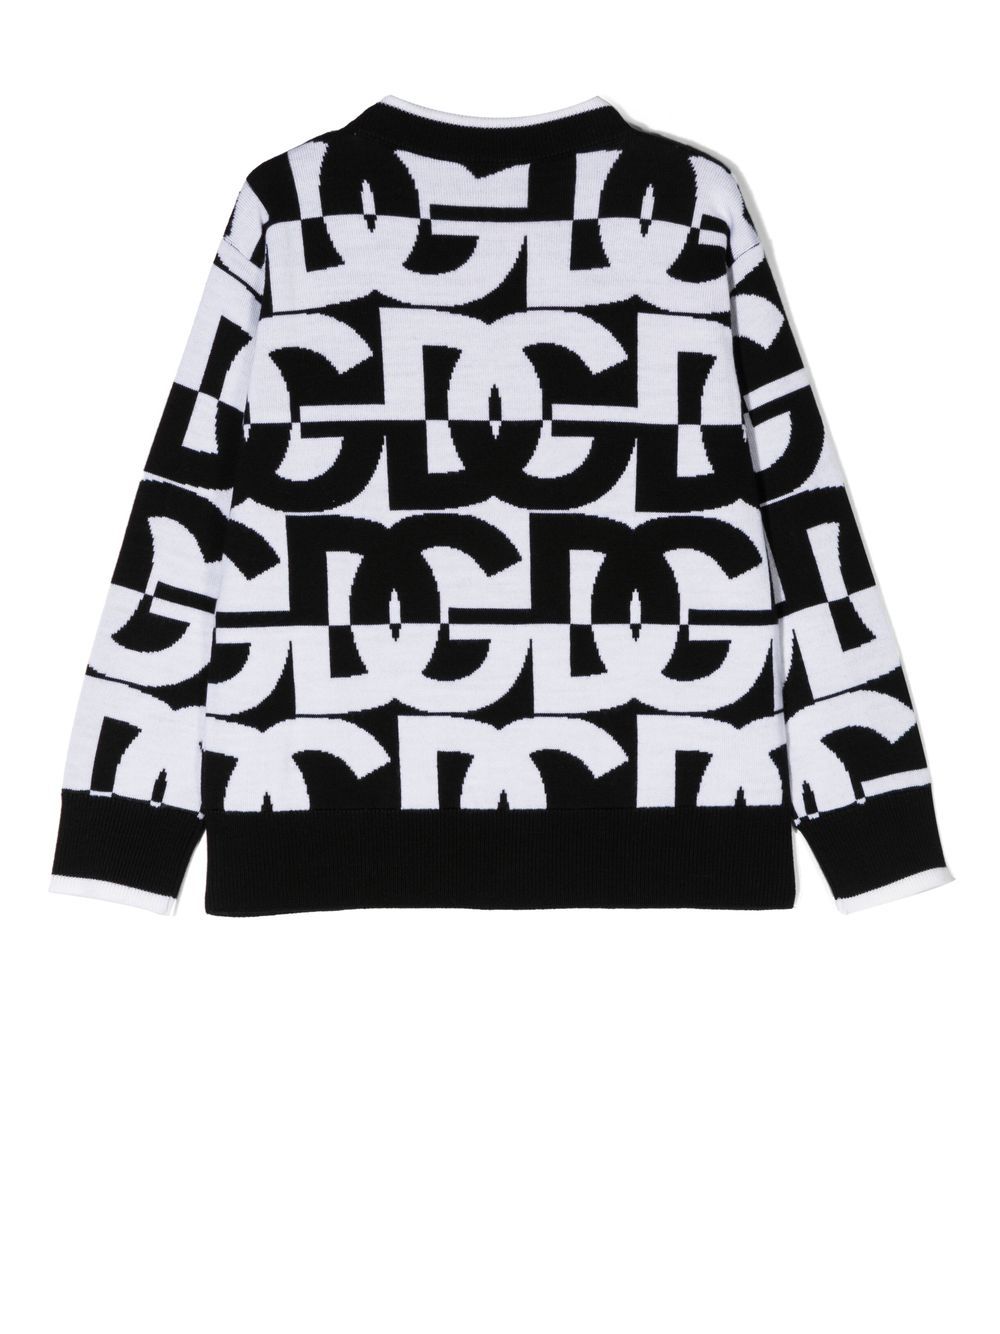 Maglione bianco e nero per bambio con logo